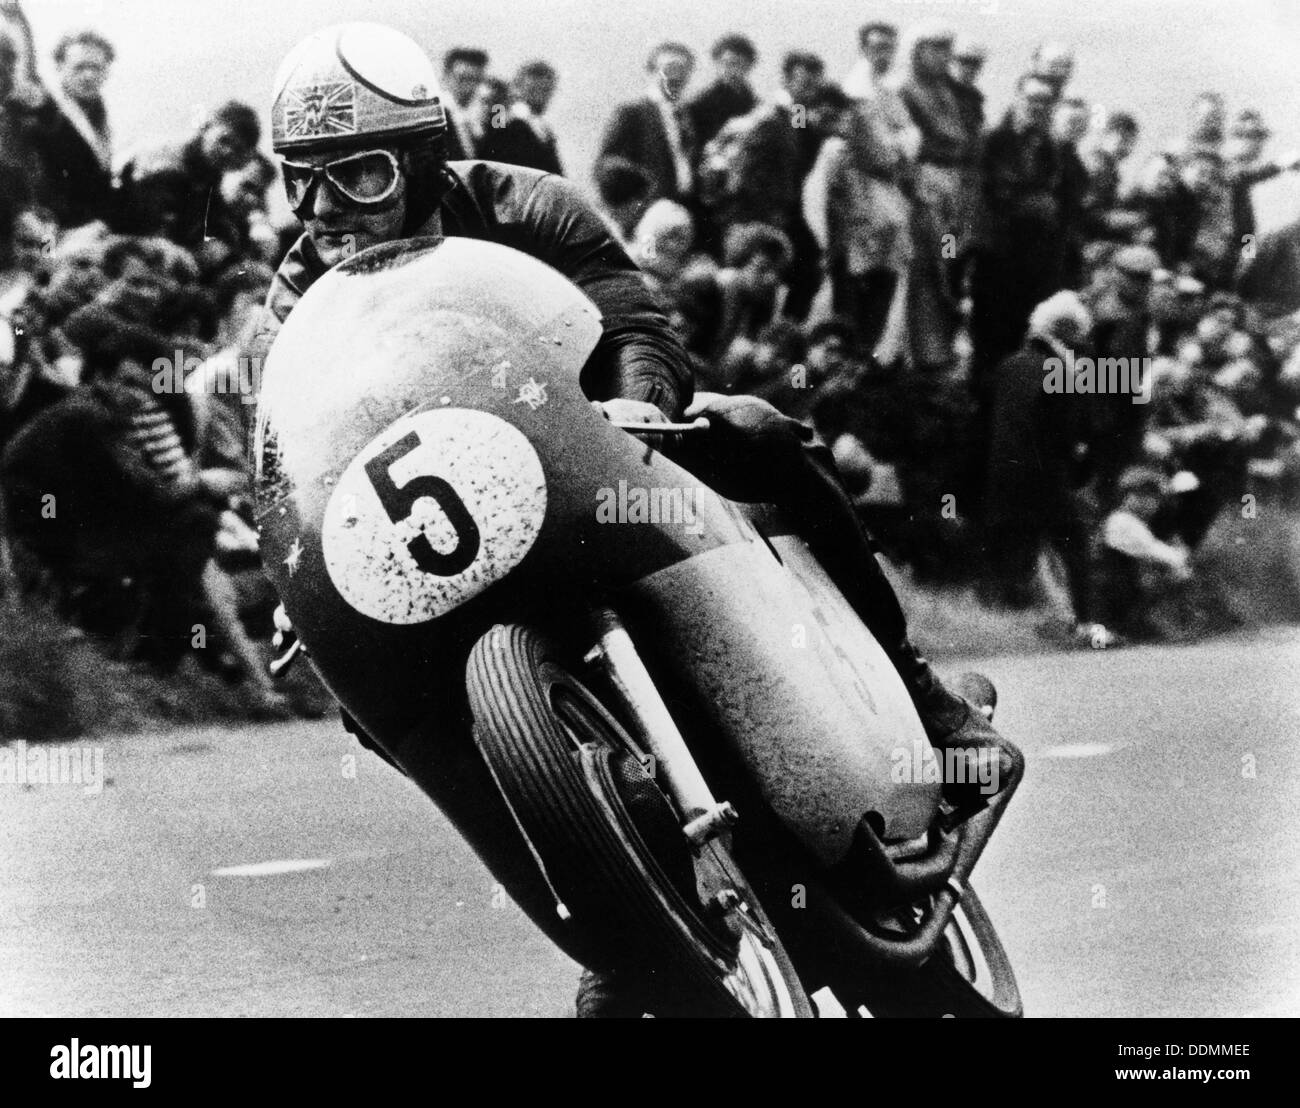 Mike Hailwood, su una MV Agusta, vincitore dell'Isola di Man Senior TT, 1964. Artista: sconosciuto Foto Stock